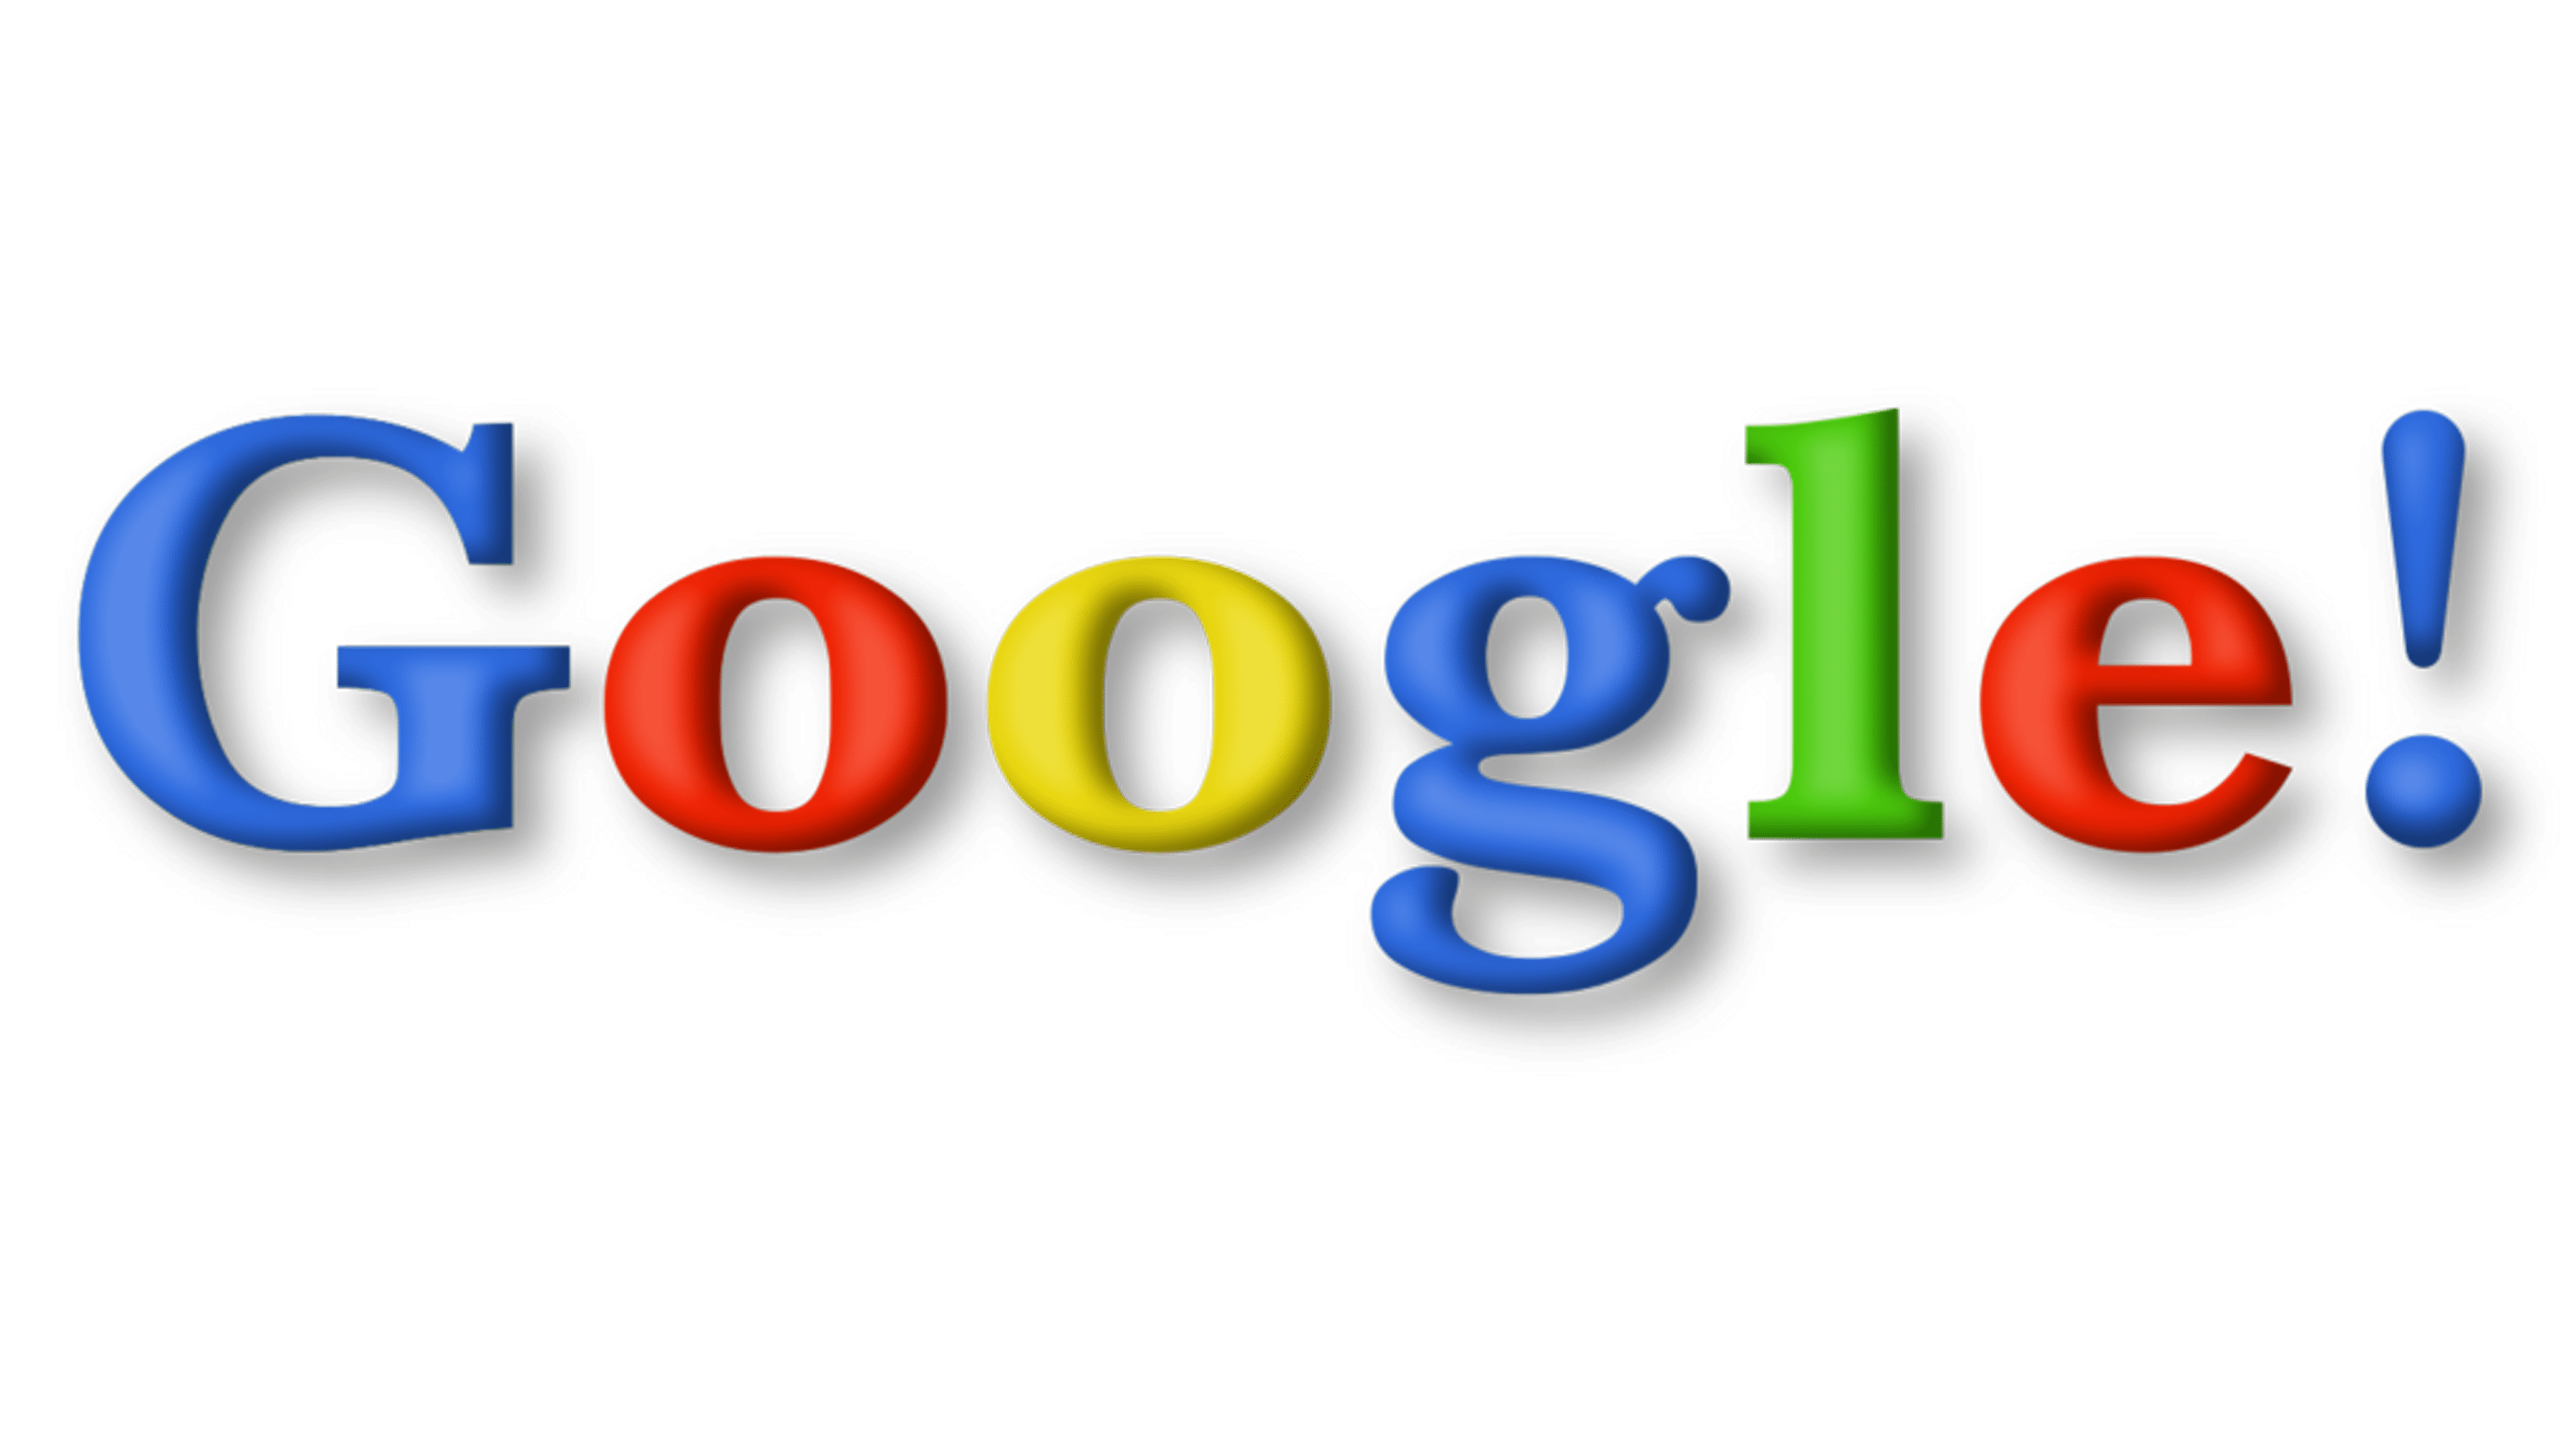 google logo maker reviews